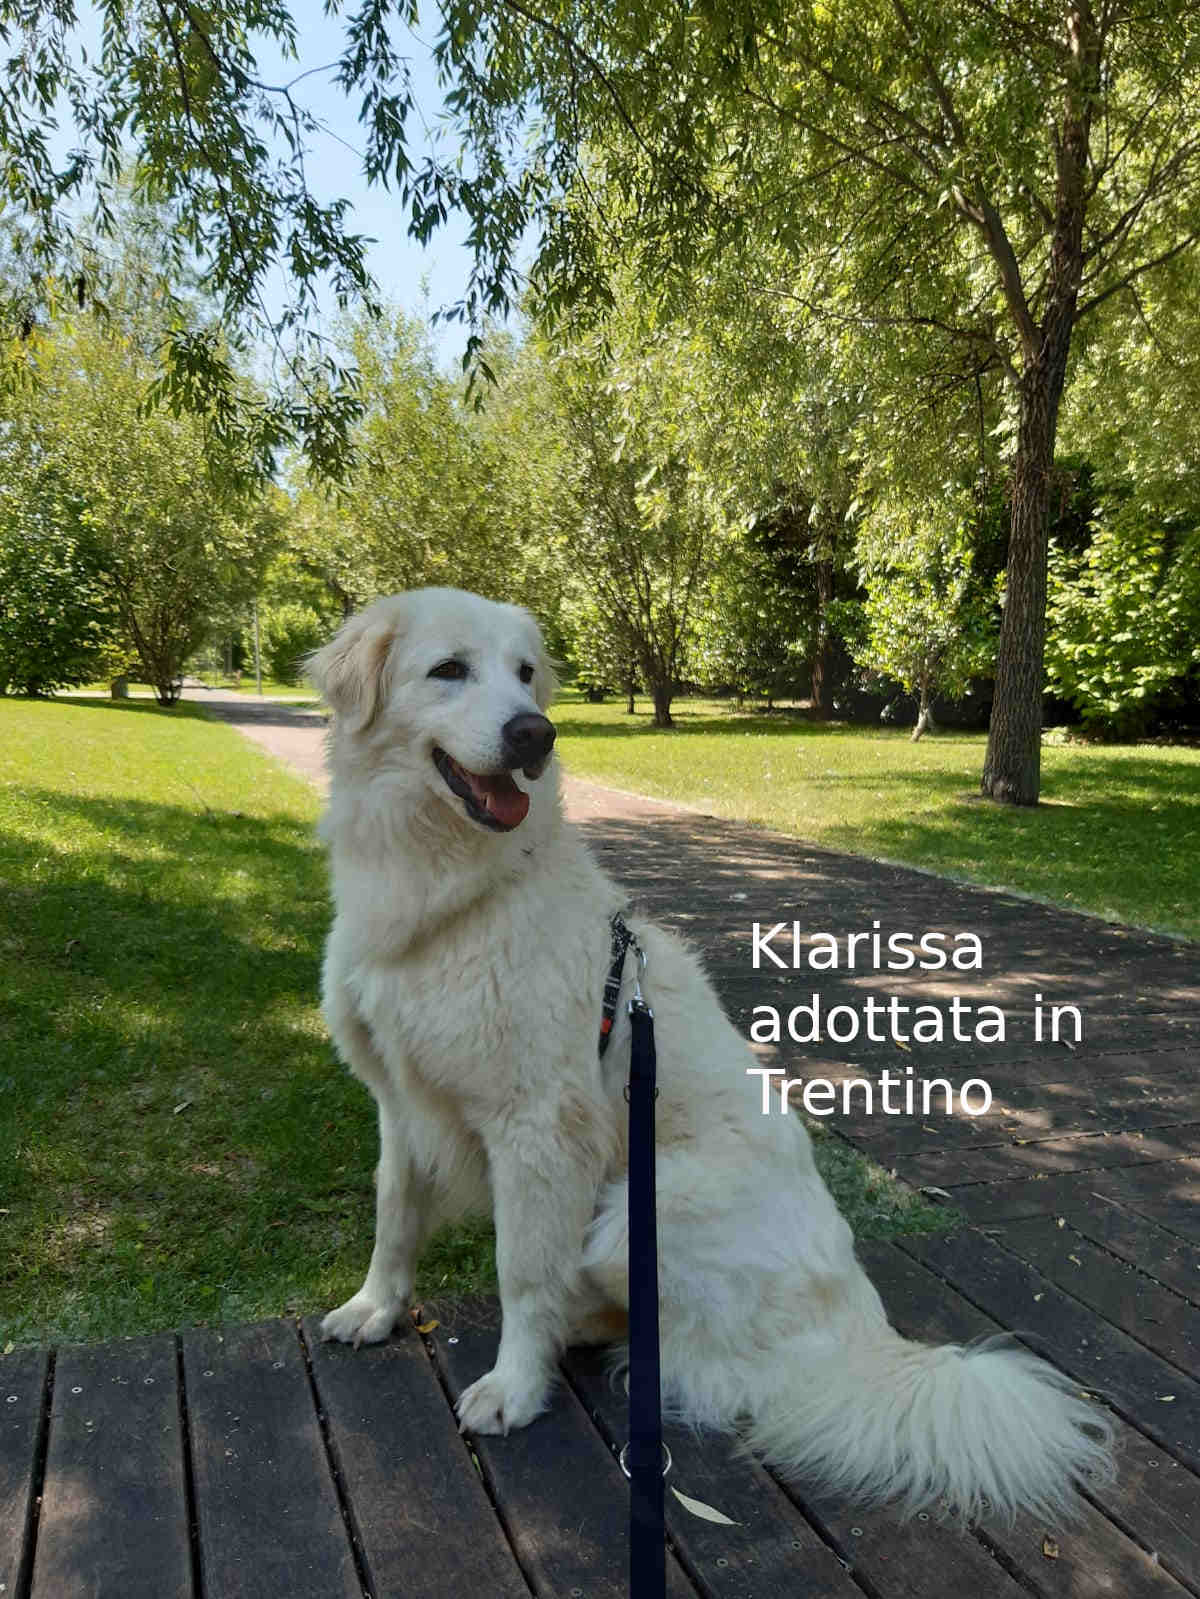 Klarissa adottata in Trentino